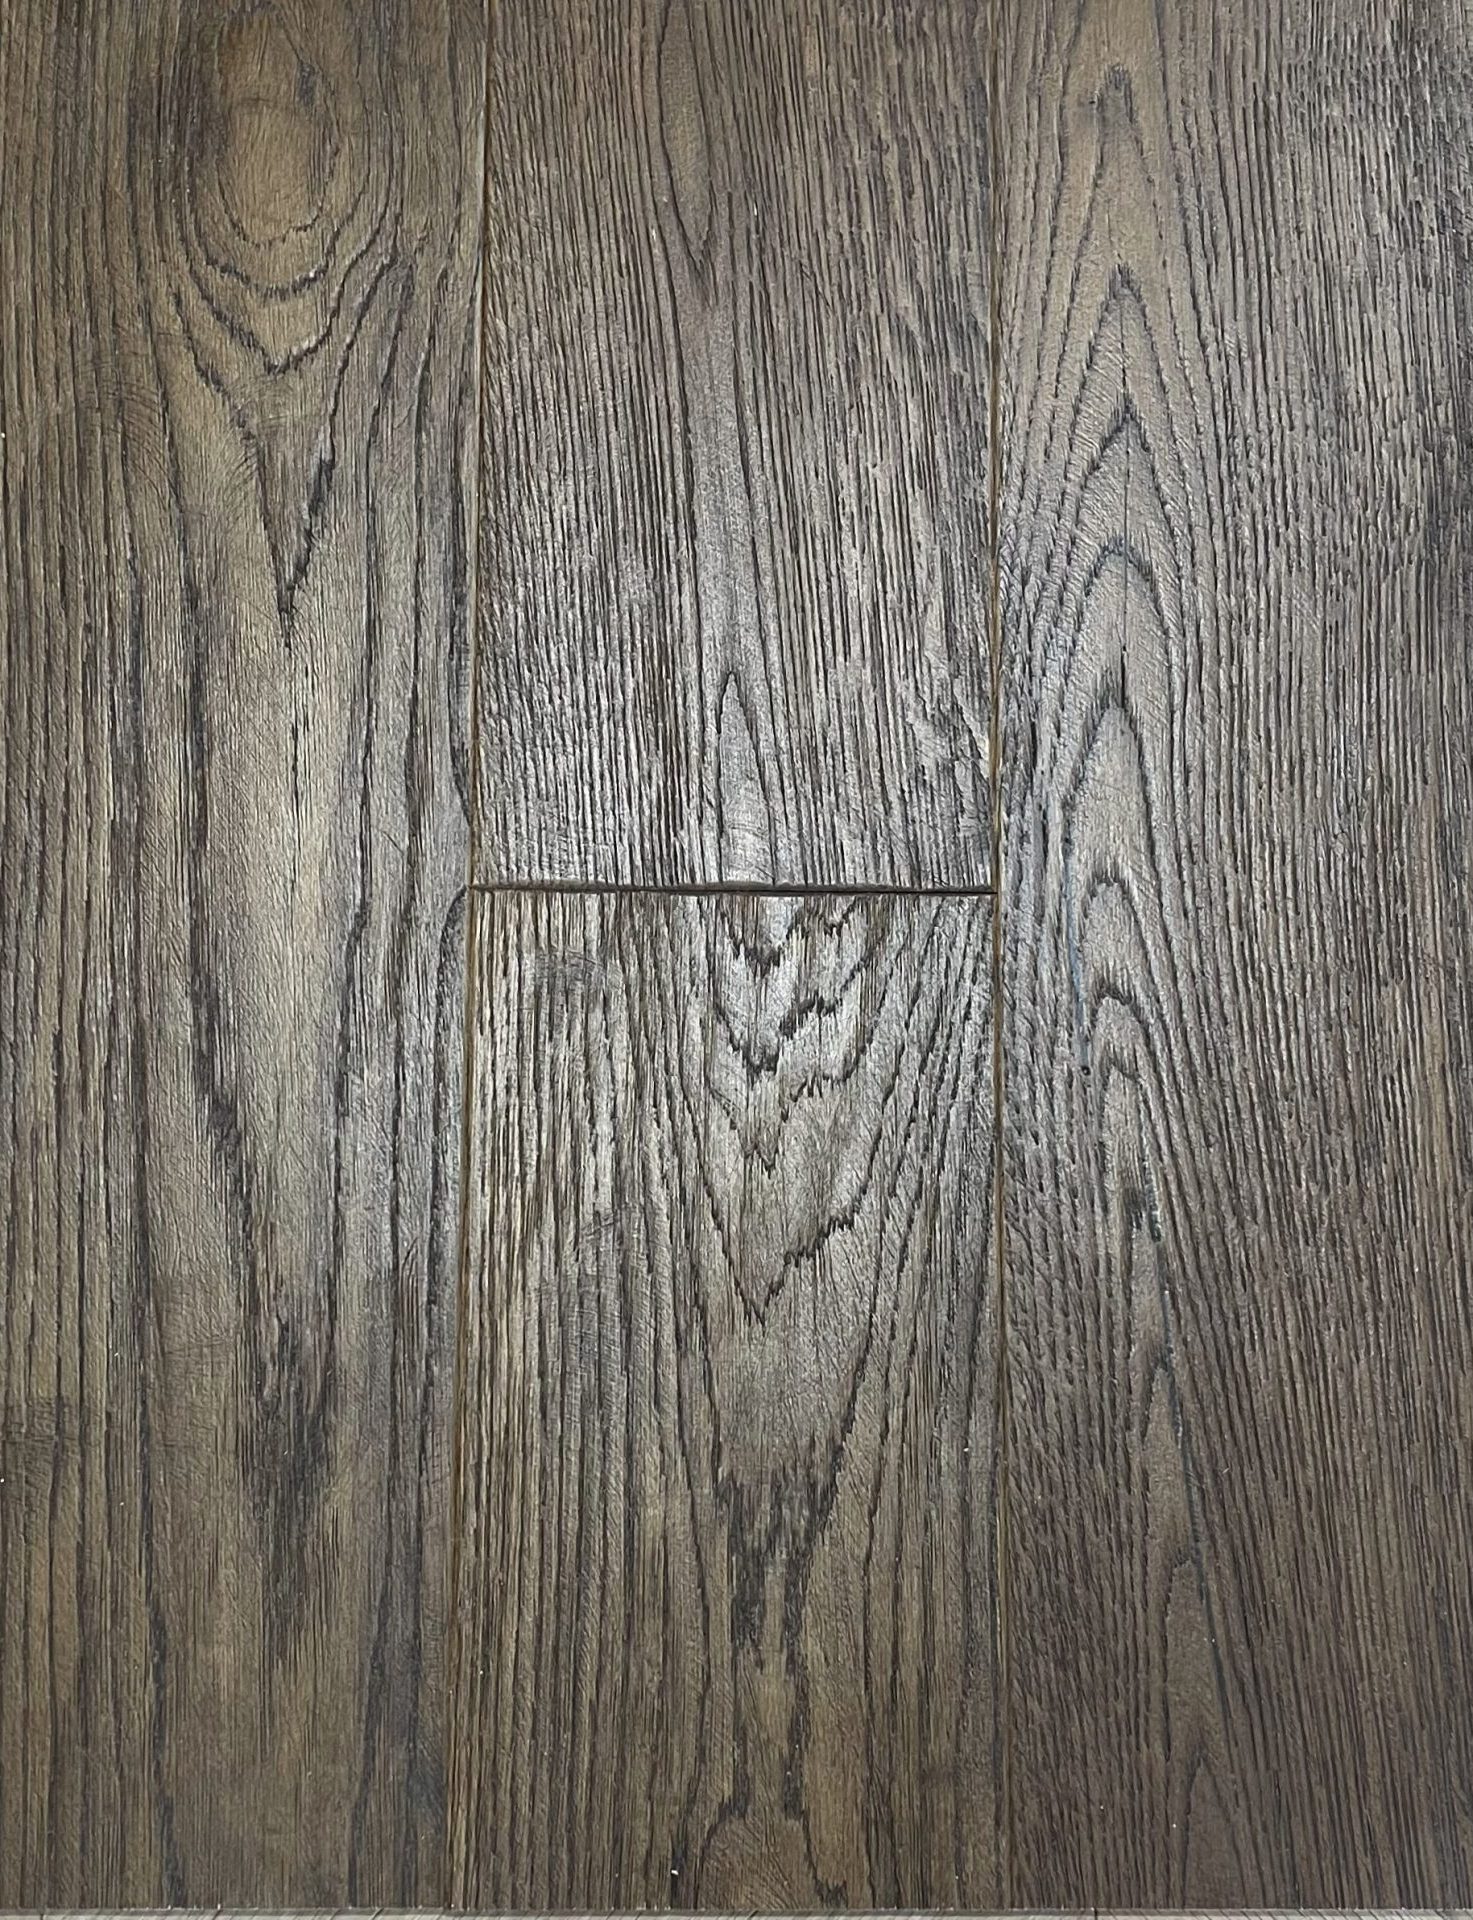 St. Donats Vintage Oak 3/14 x 190mm x 1900mm Distressed Hard Wax Oiled Wood Flooring